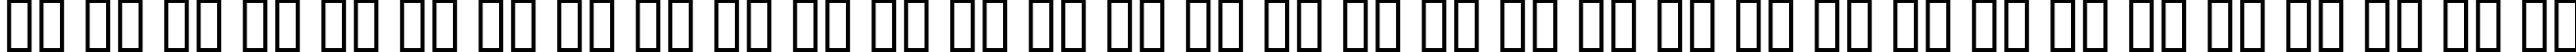 Пример написания русского алфавита шрифтом Aftershock Debris CondSolid Italic